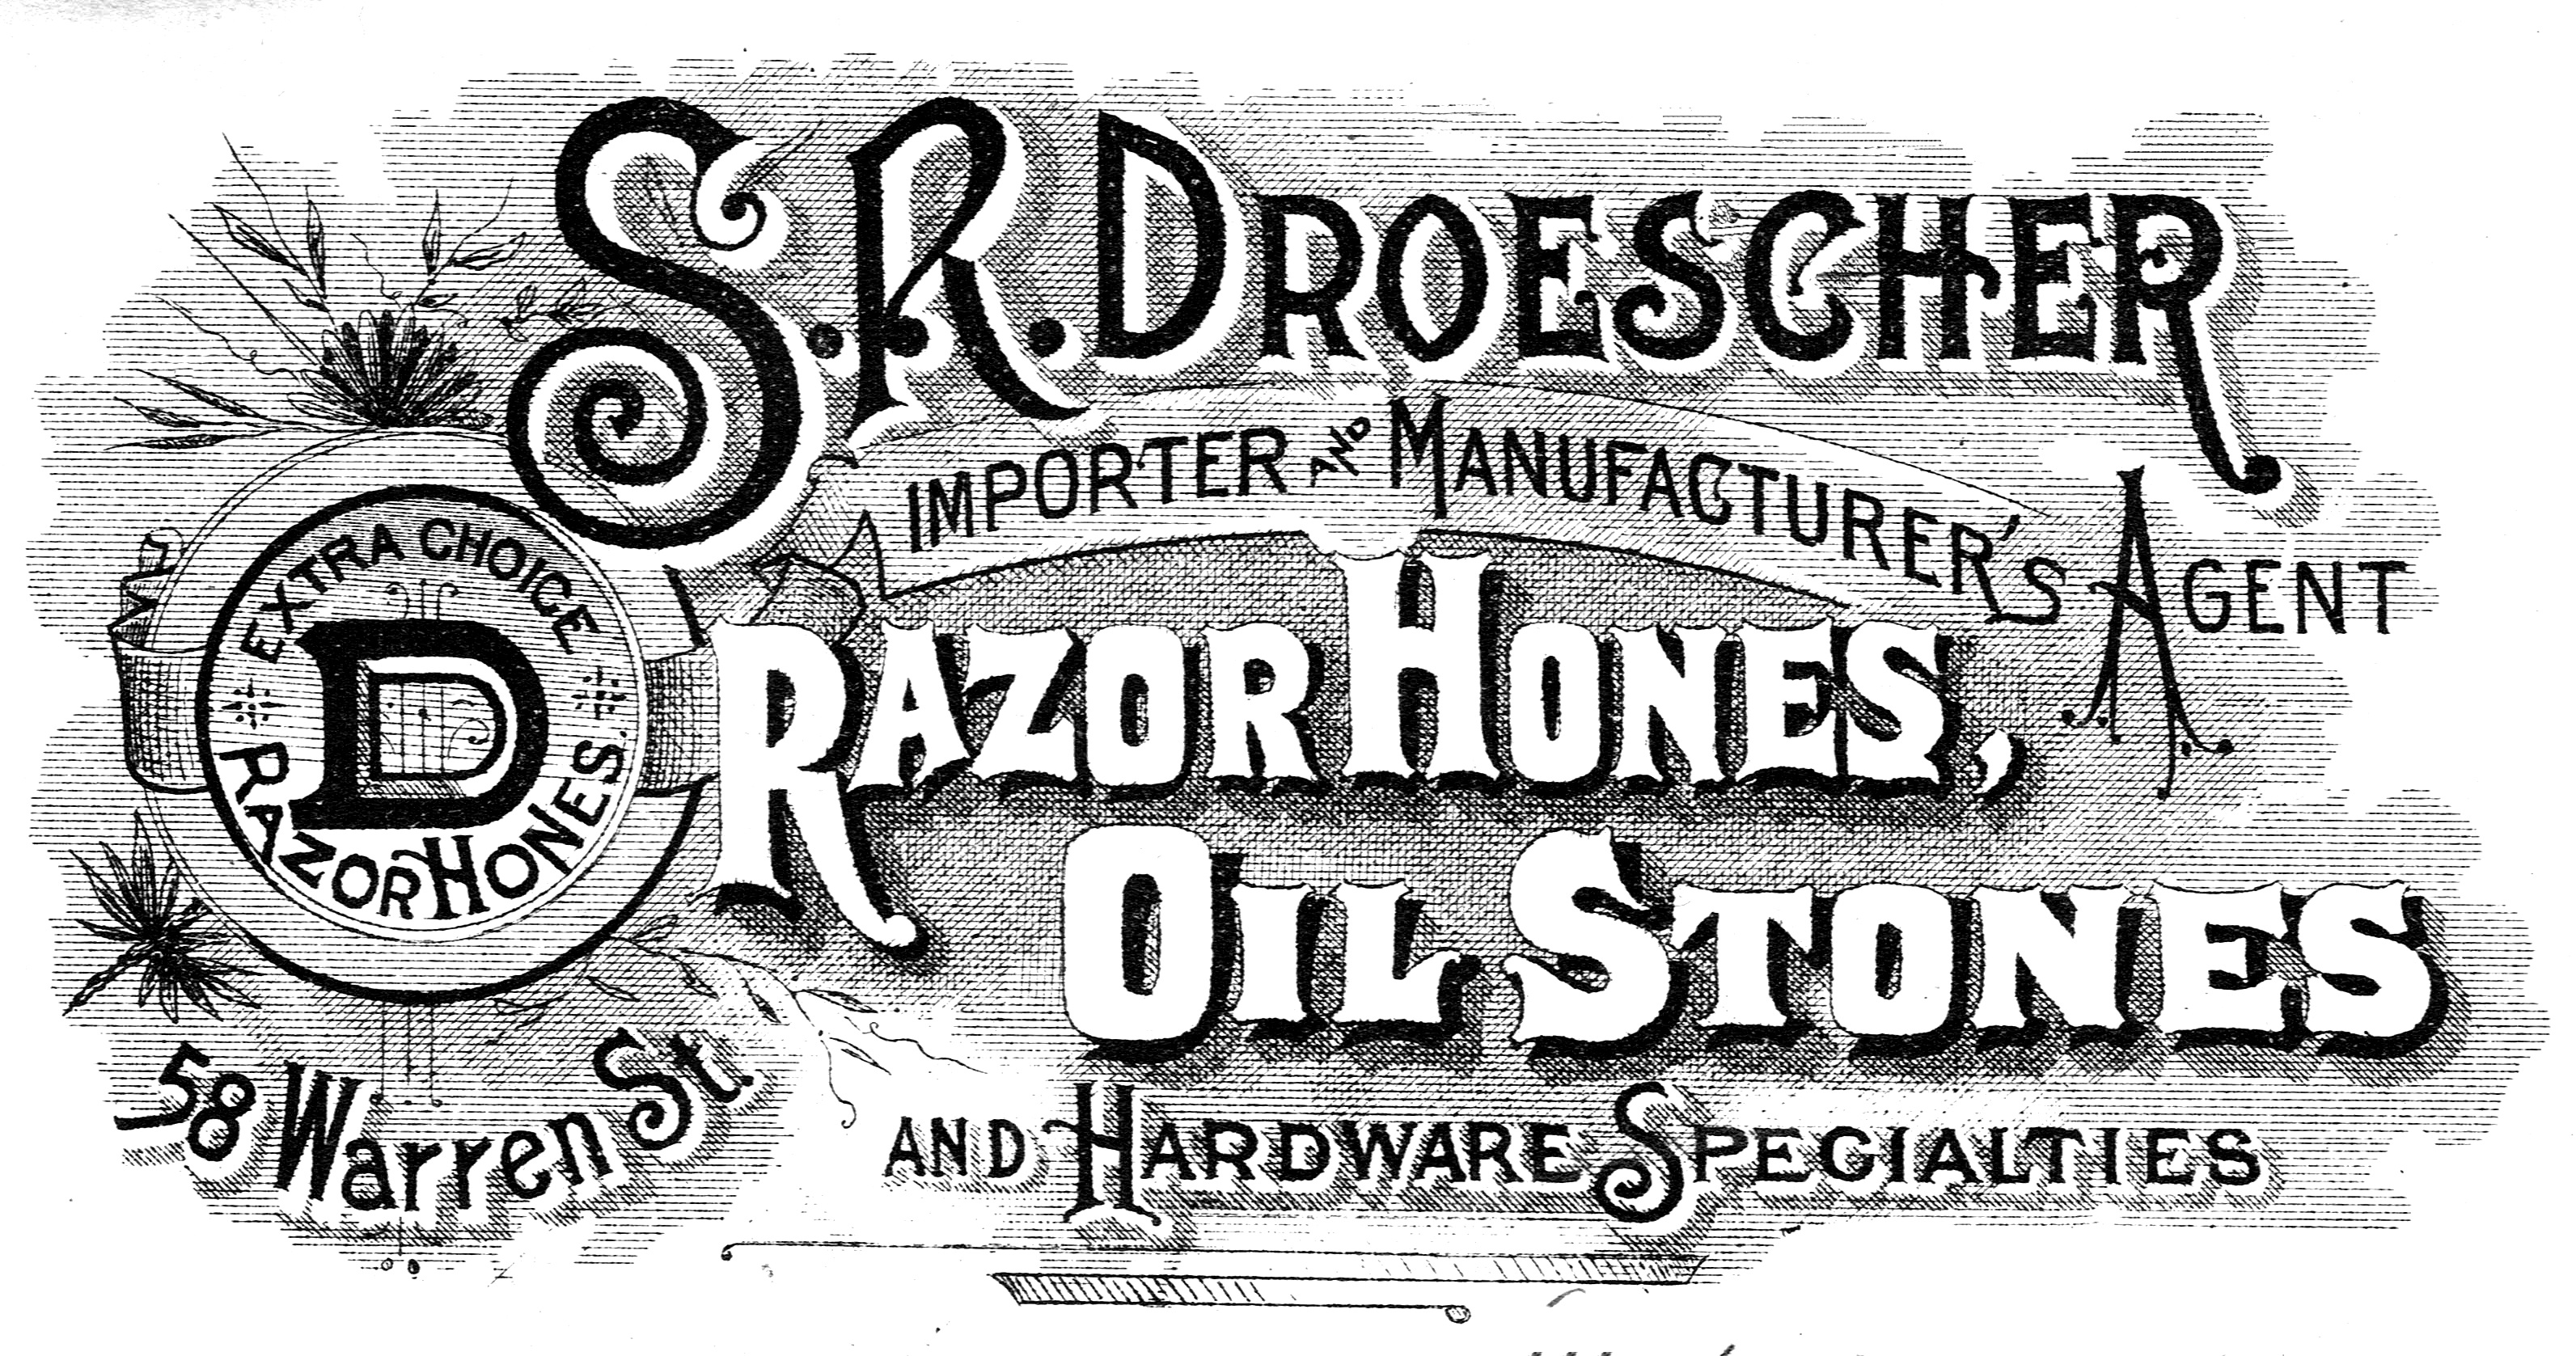 1894_10_05_SR Droescher Letterhead (SRD)